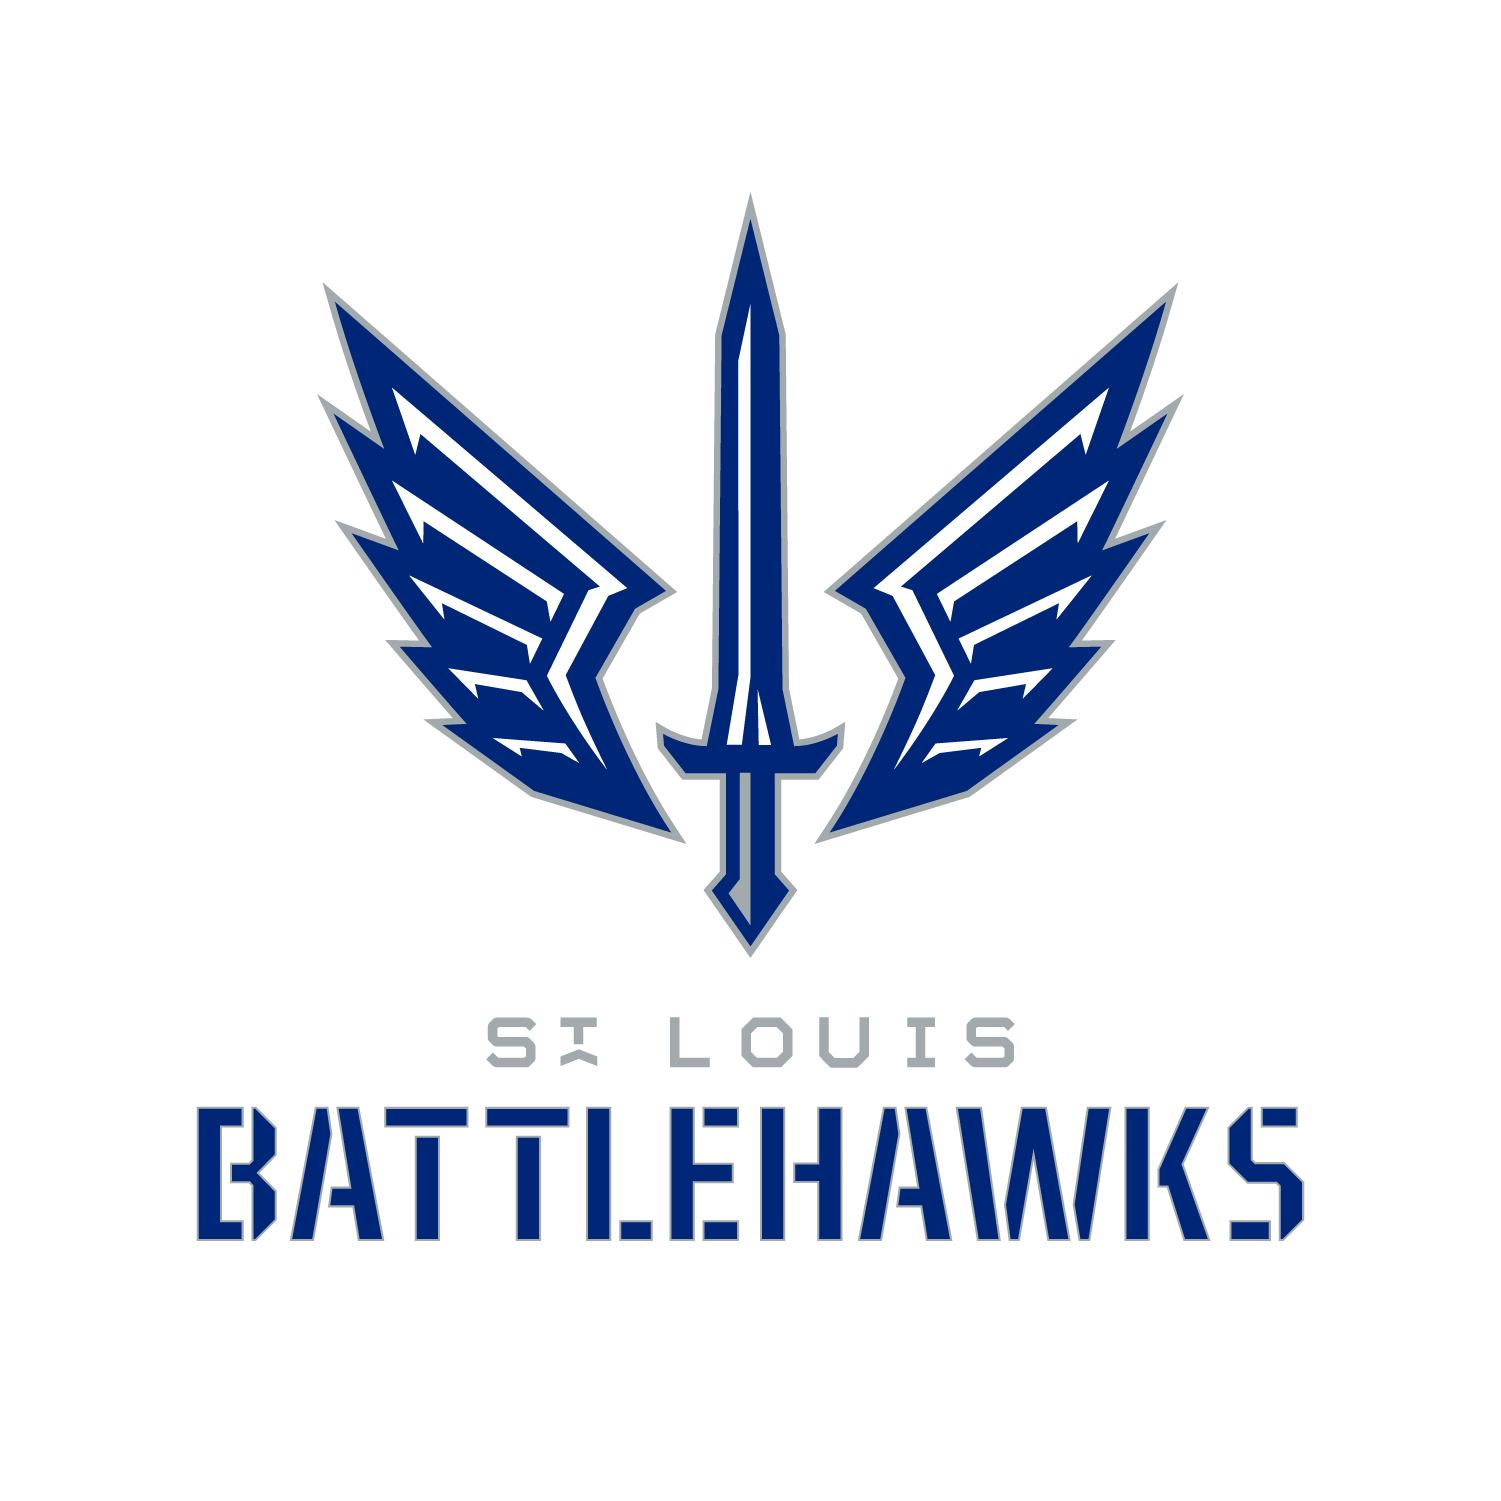 St. Louis Battlehawks News, Schedule, Roster, & More